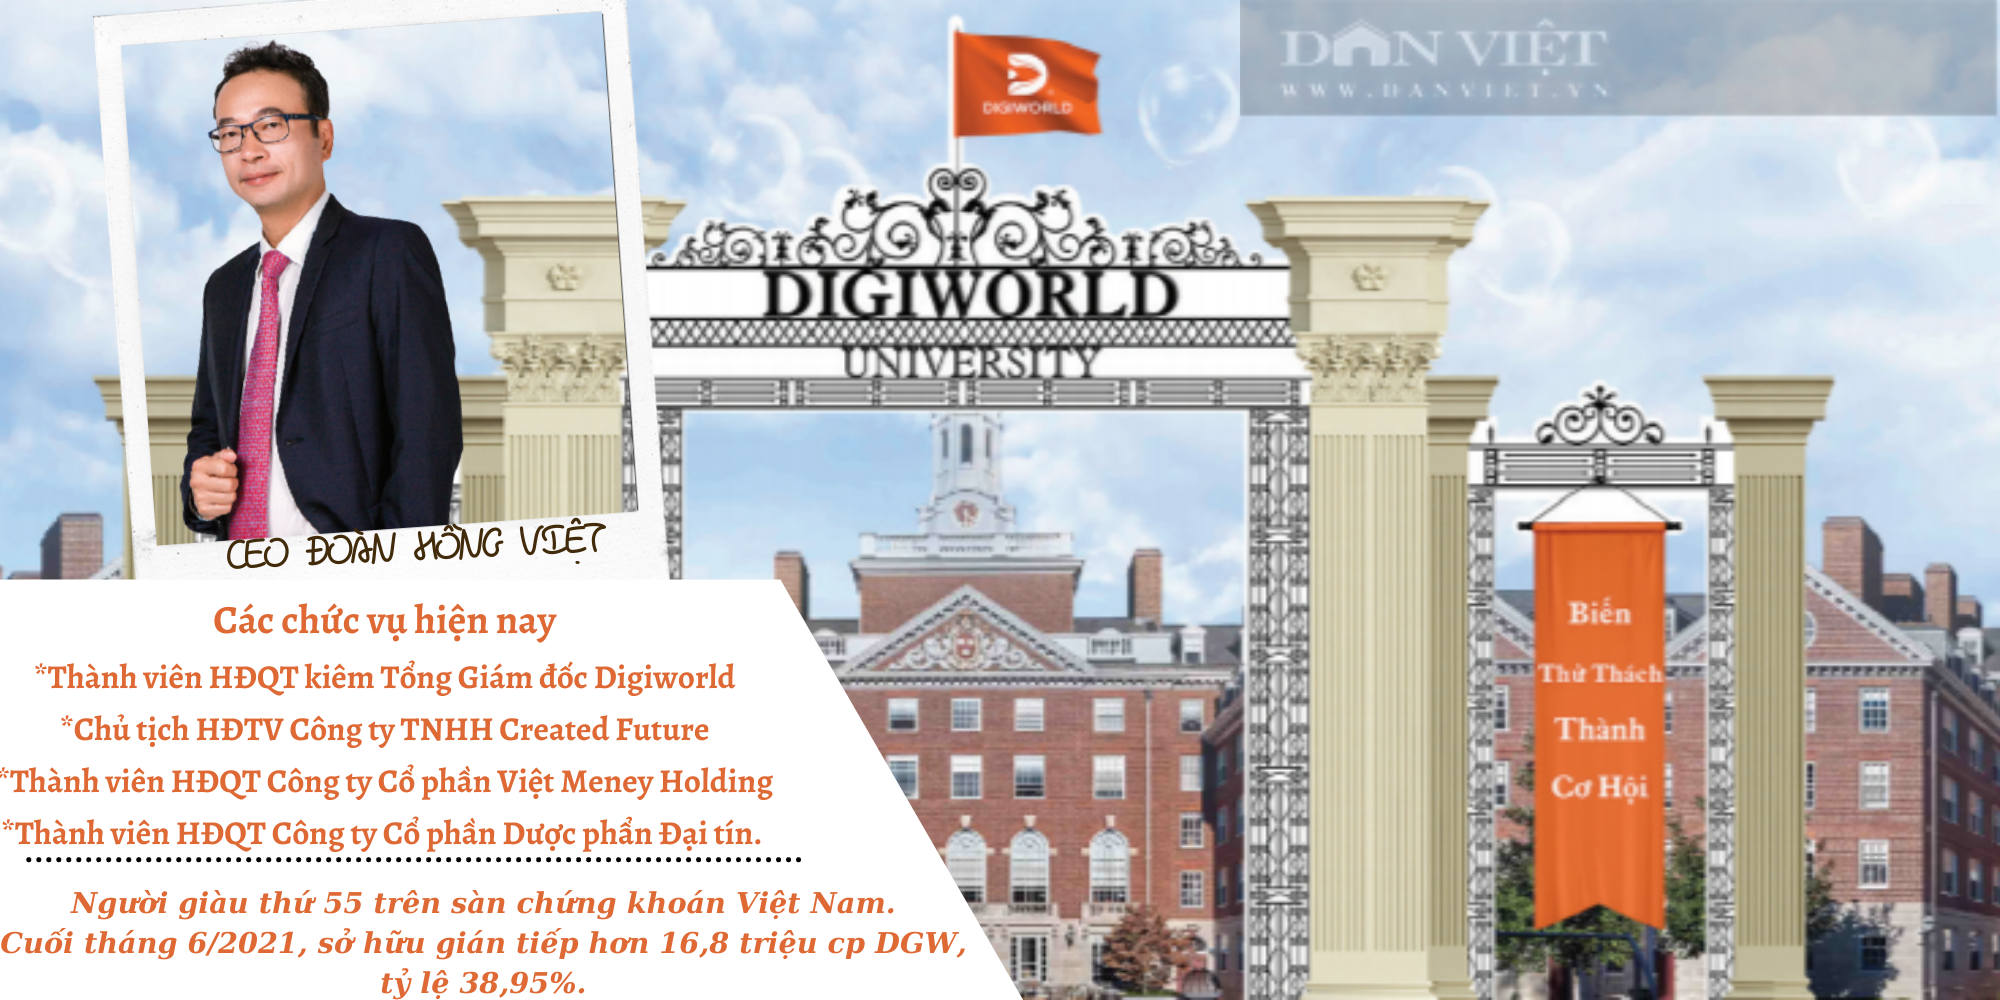 [HỒ SƠ DOANH NGHIỆP]: CEO Đoàn Hồng Việt và hành trình xây dựng đế chế Digiworld - Ảnh 3.